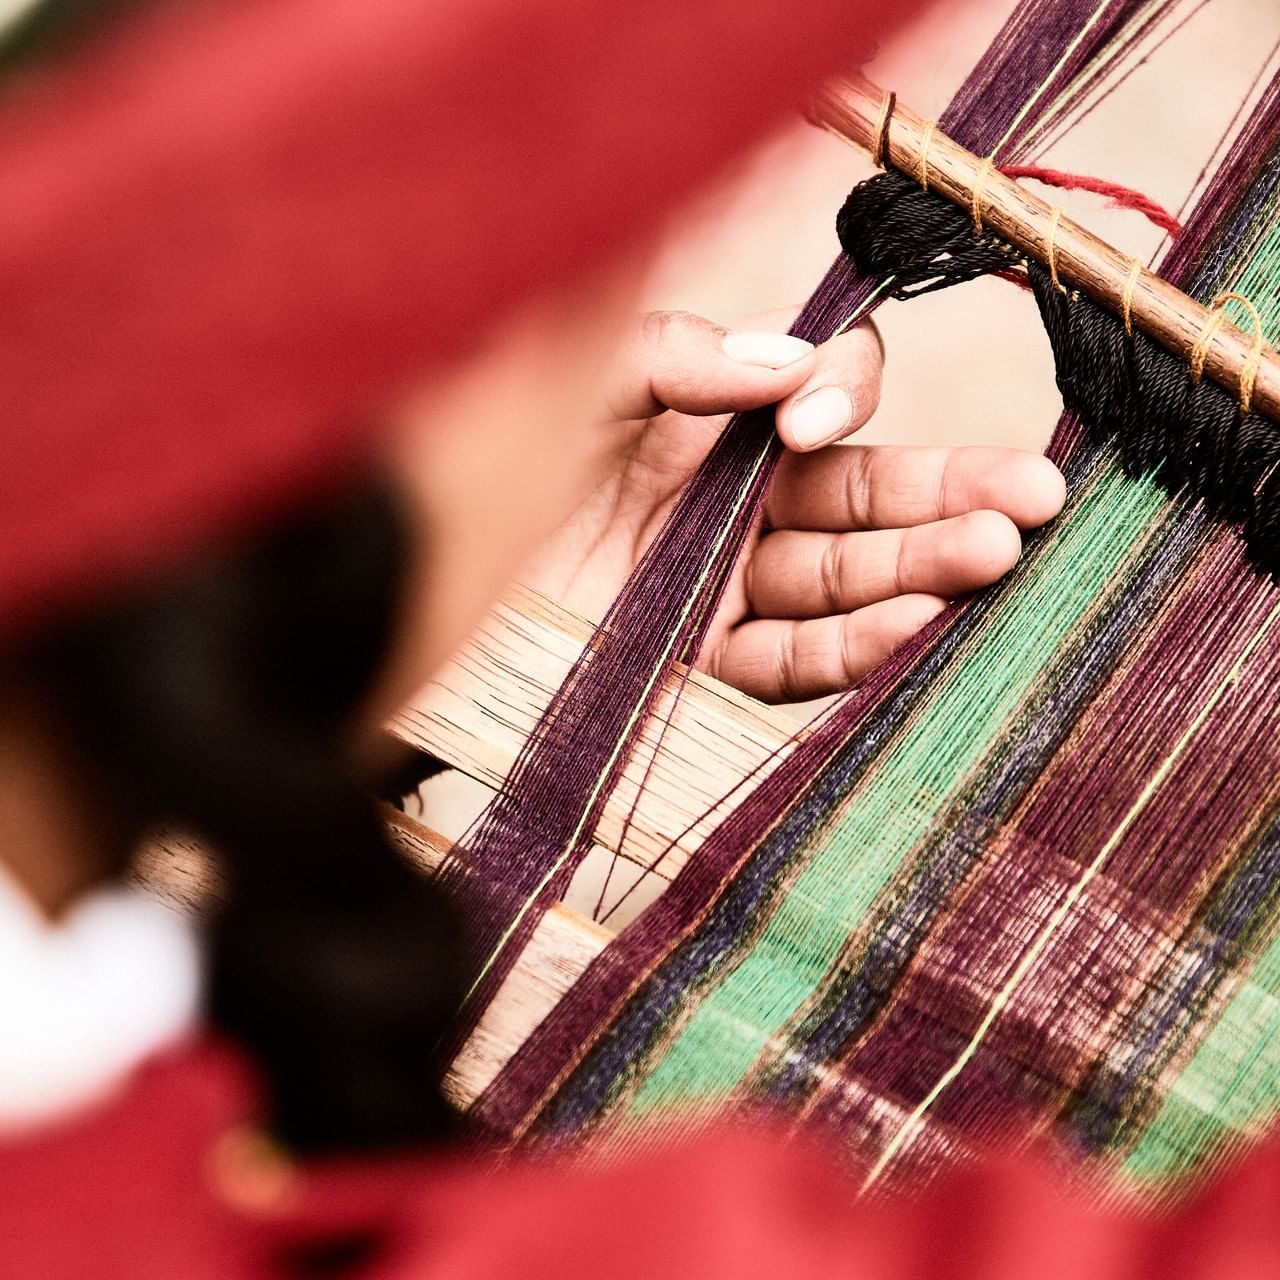 A person weaving in Chinchero near Hotel Sumaq